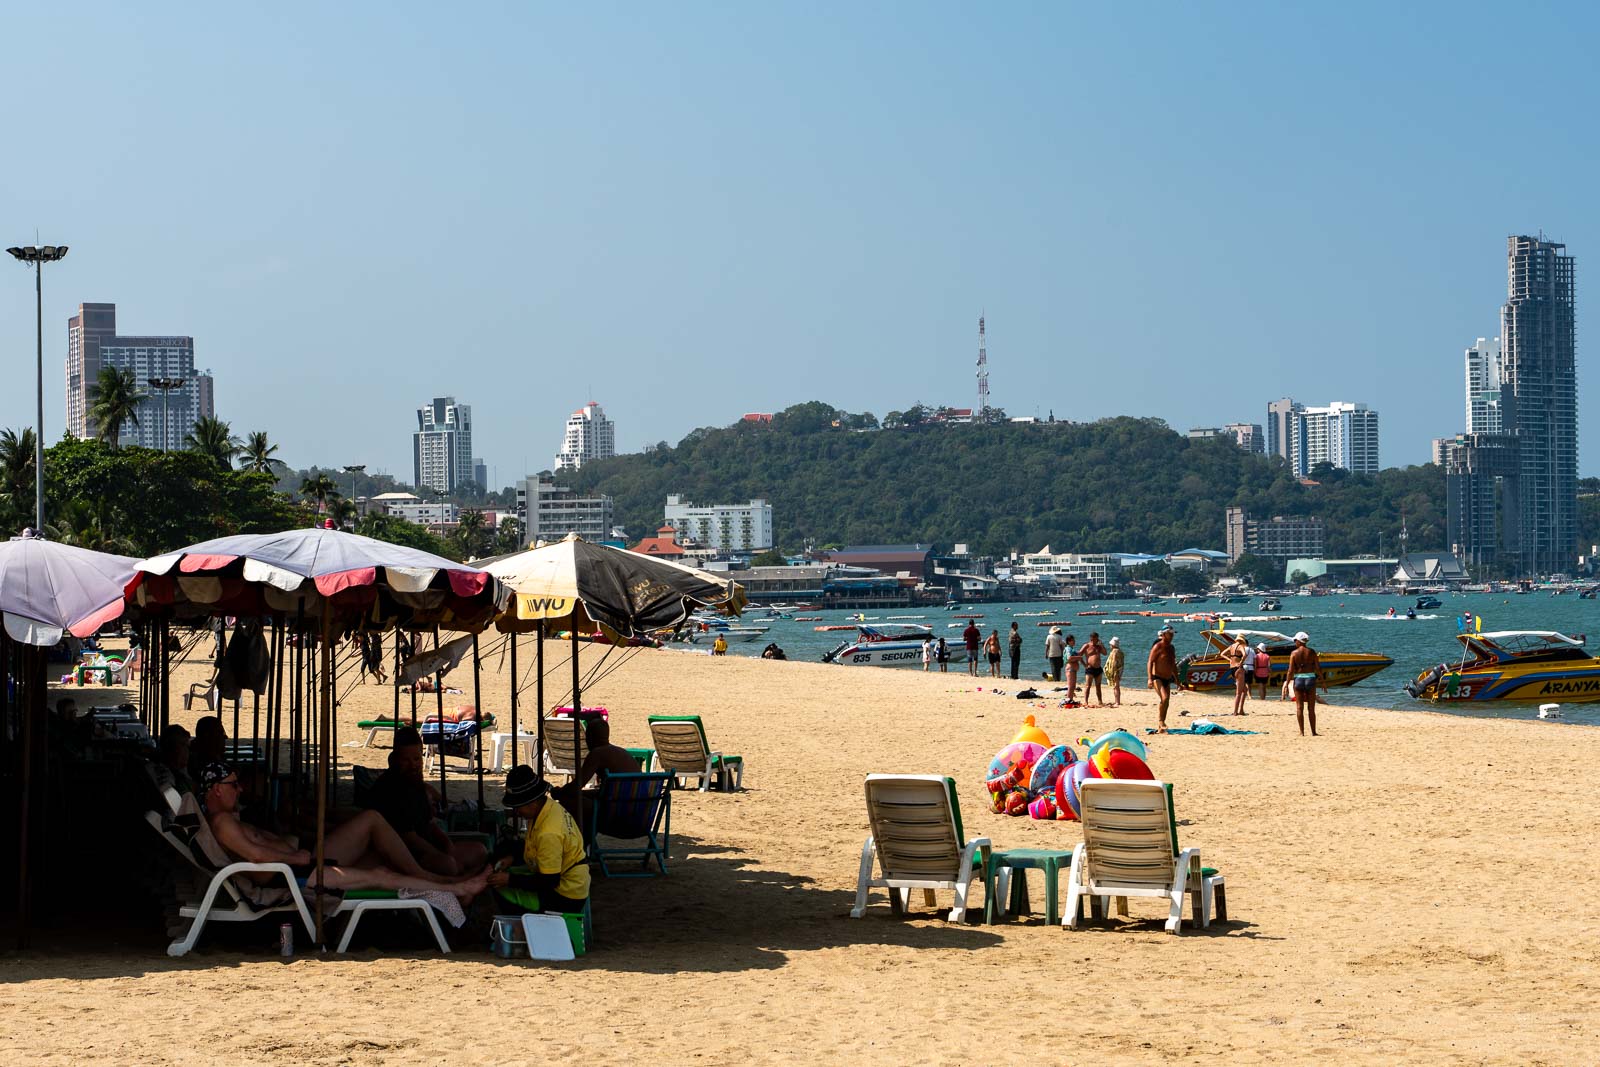 Things to see in Pattaya: The main Pattaya Beach